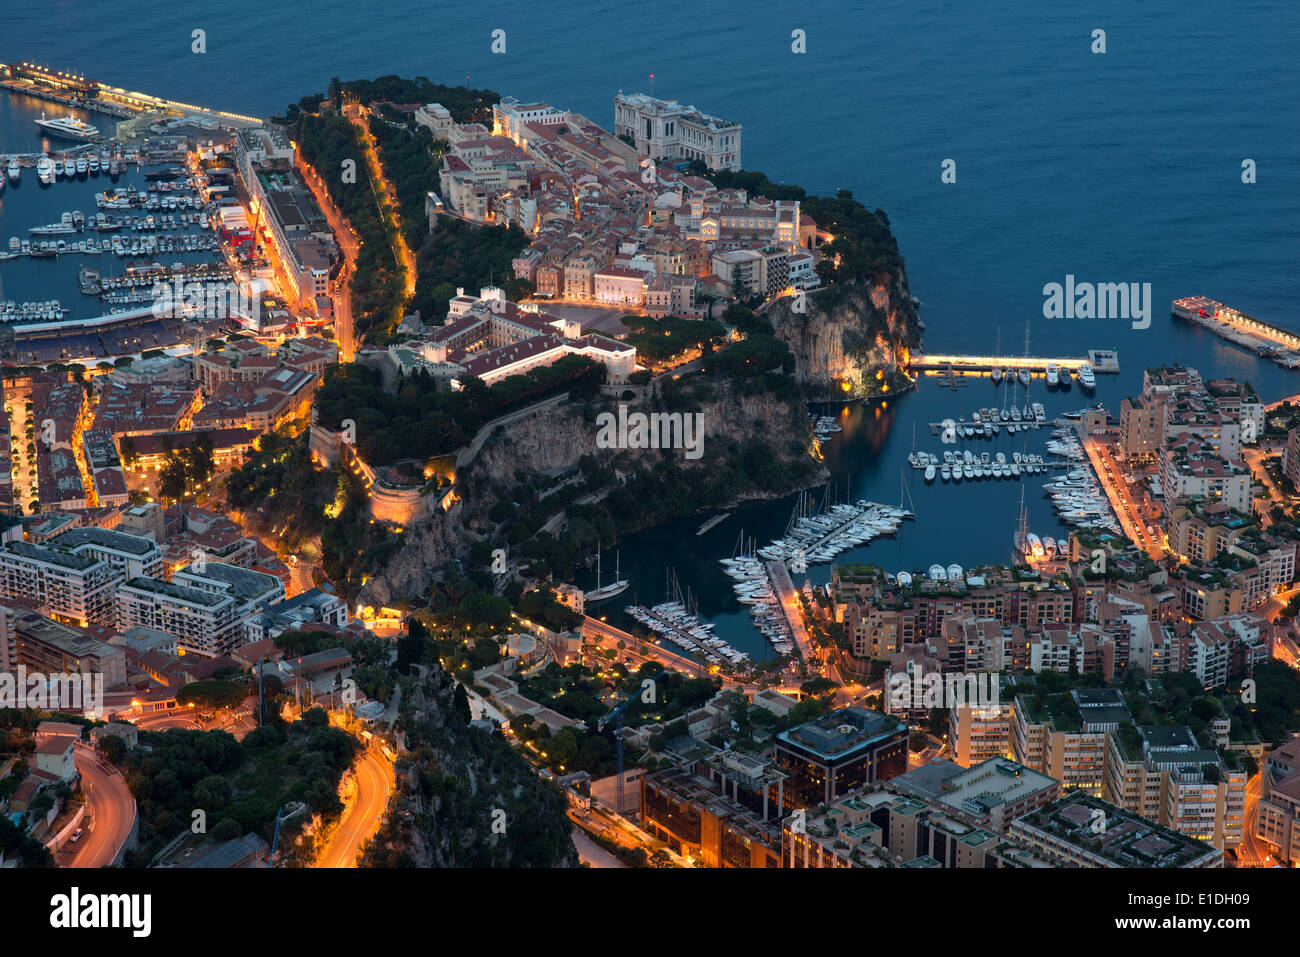 Der Bezirk von Monaco-Ville mit dem Prinzenpalast und dem Ozeanographischen Museum, den beiden prominentesten Gebäuden. Fürstentum Monaco. Stockfoto